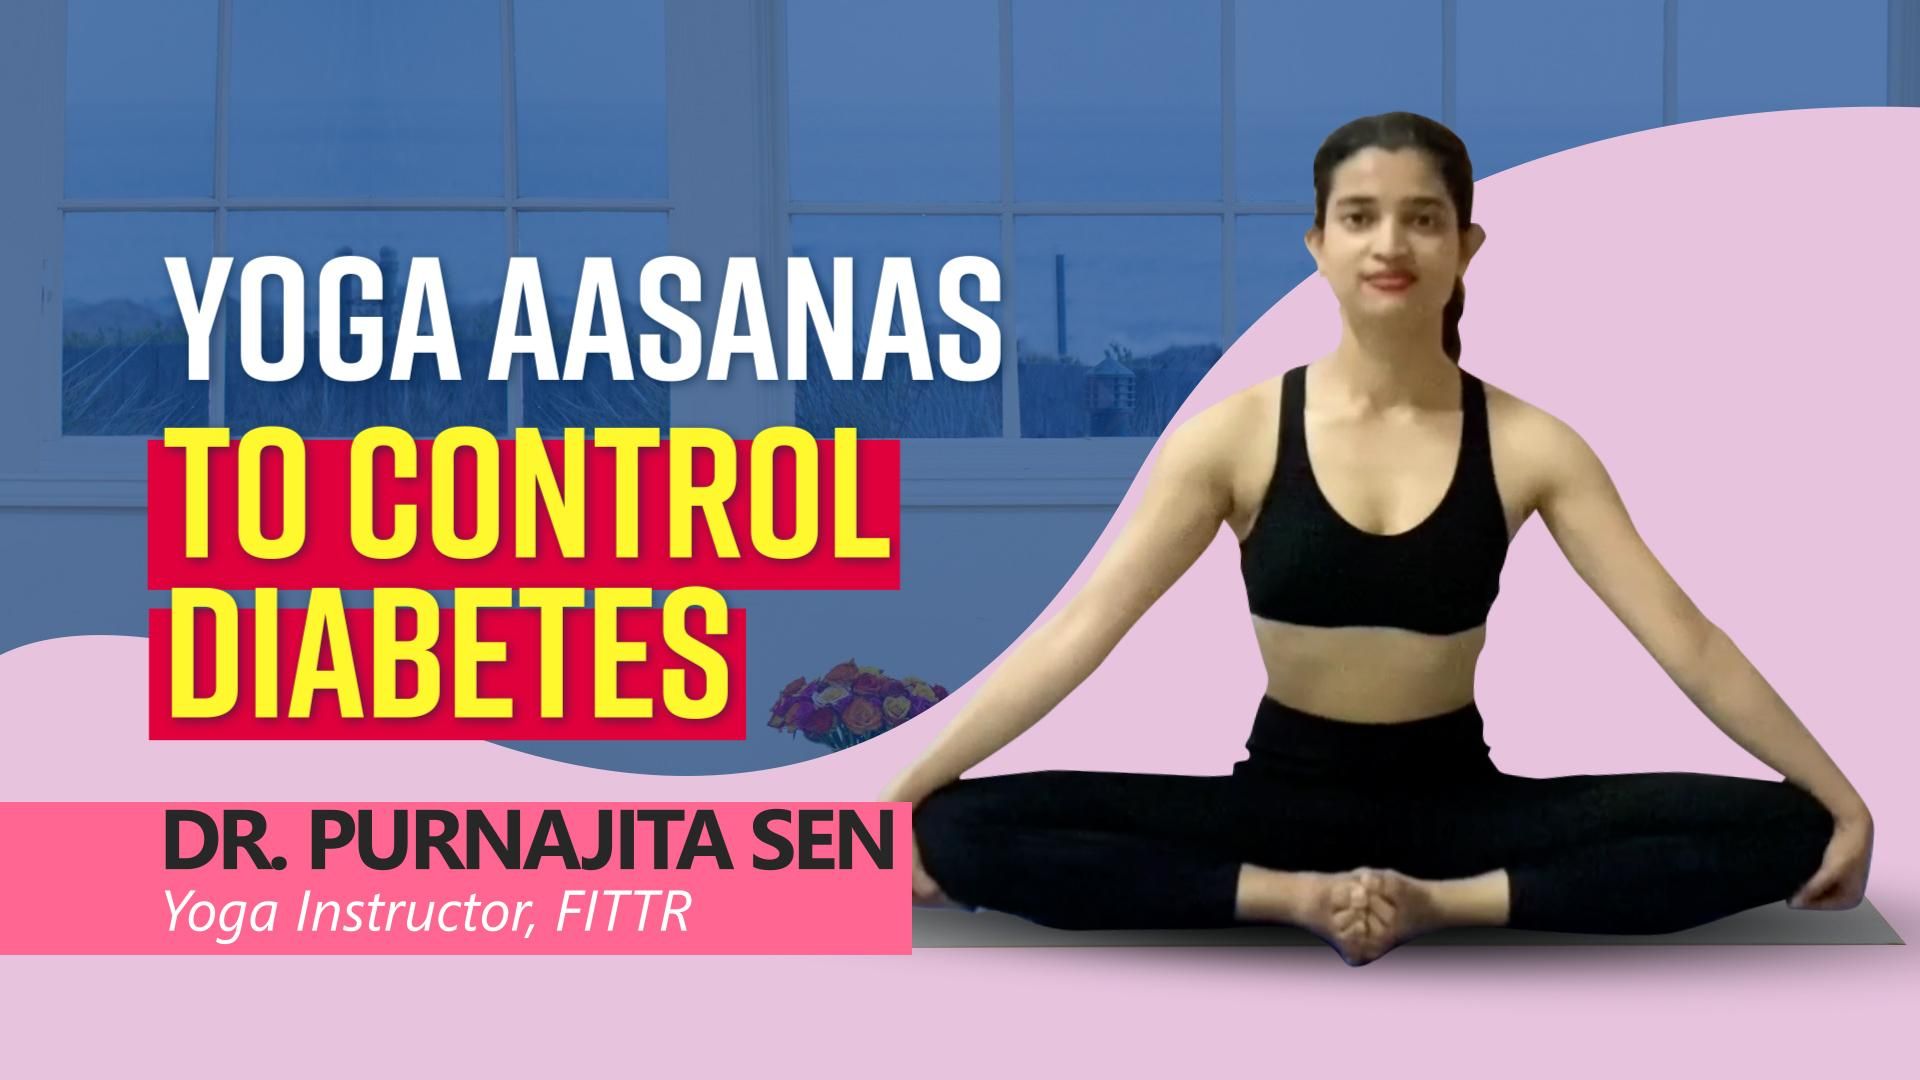 3 Yoga Poses To Control Diabetes | Yoga for Diabetes | Yogfit - YouTube